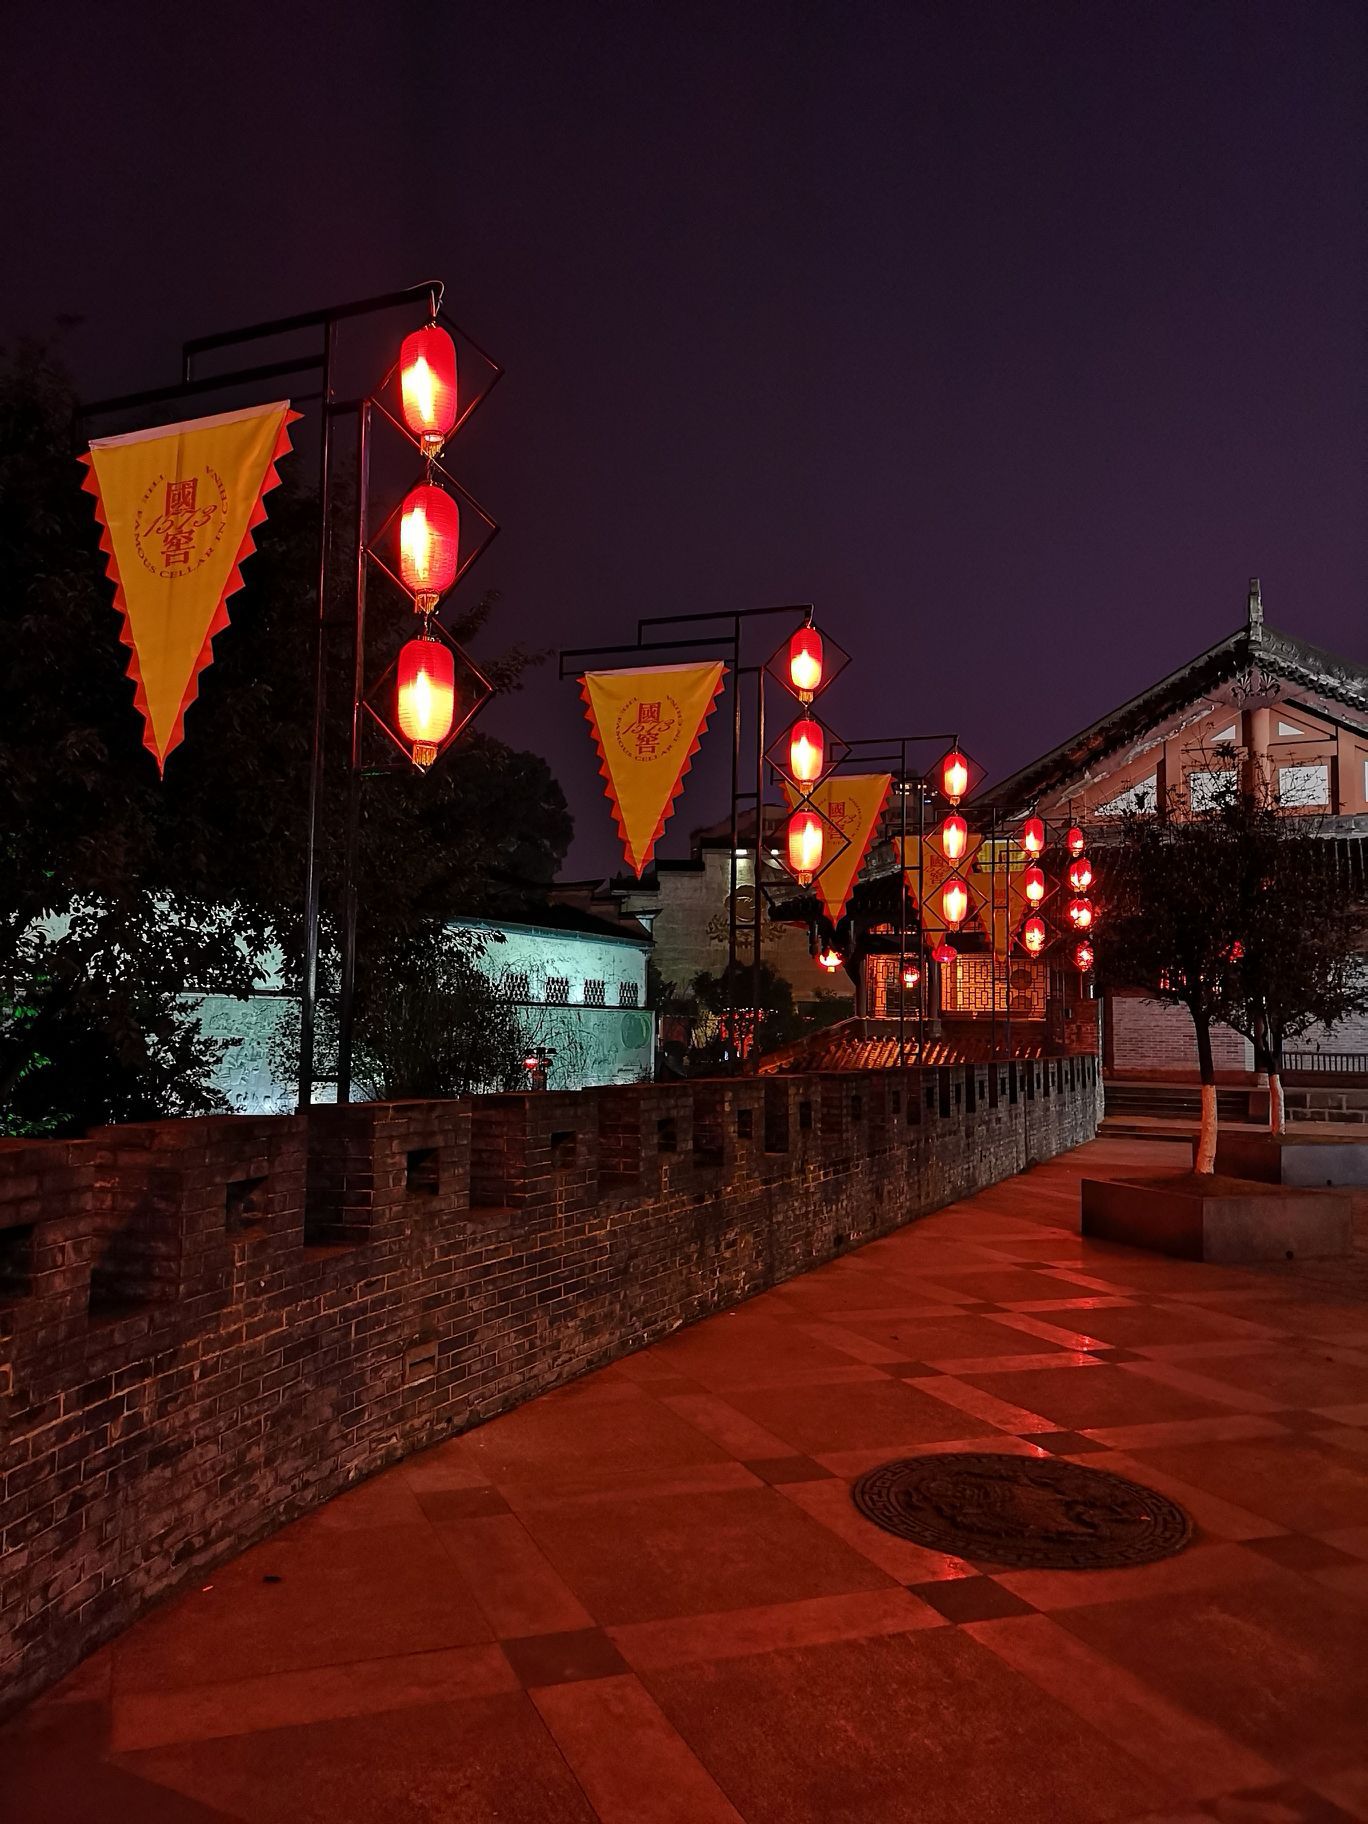 泸州老窖广场的夜景也很漂亮,没有其他游客,整个广场静悄悄的,现场有